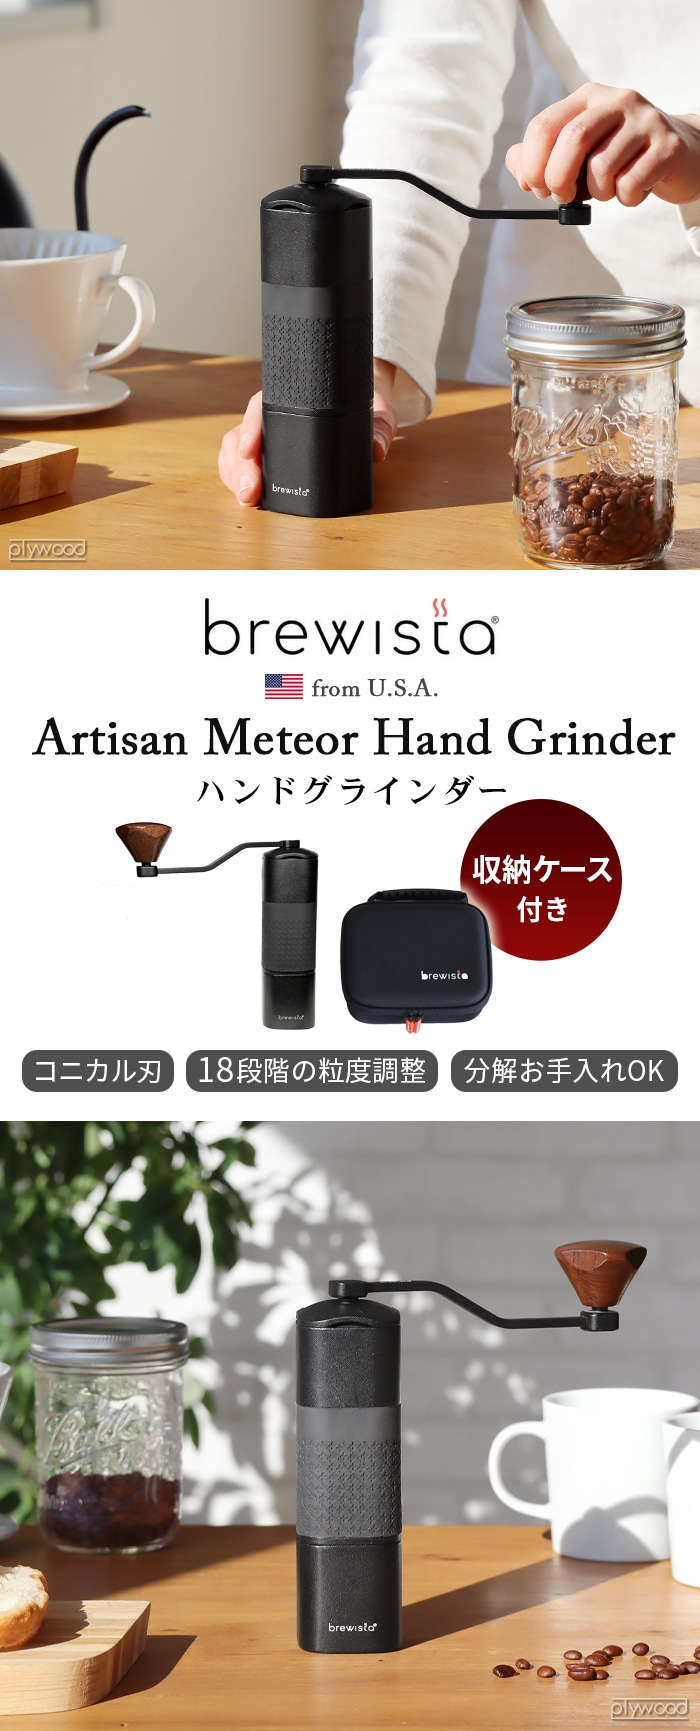 ブリューイスタ ハンドグラインダー Brewista Artisan Meteor Hand